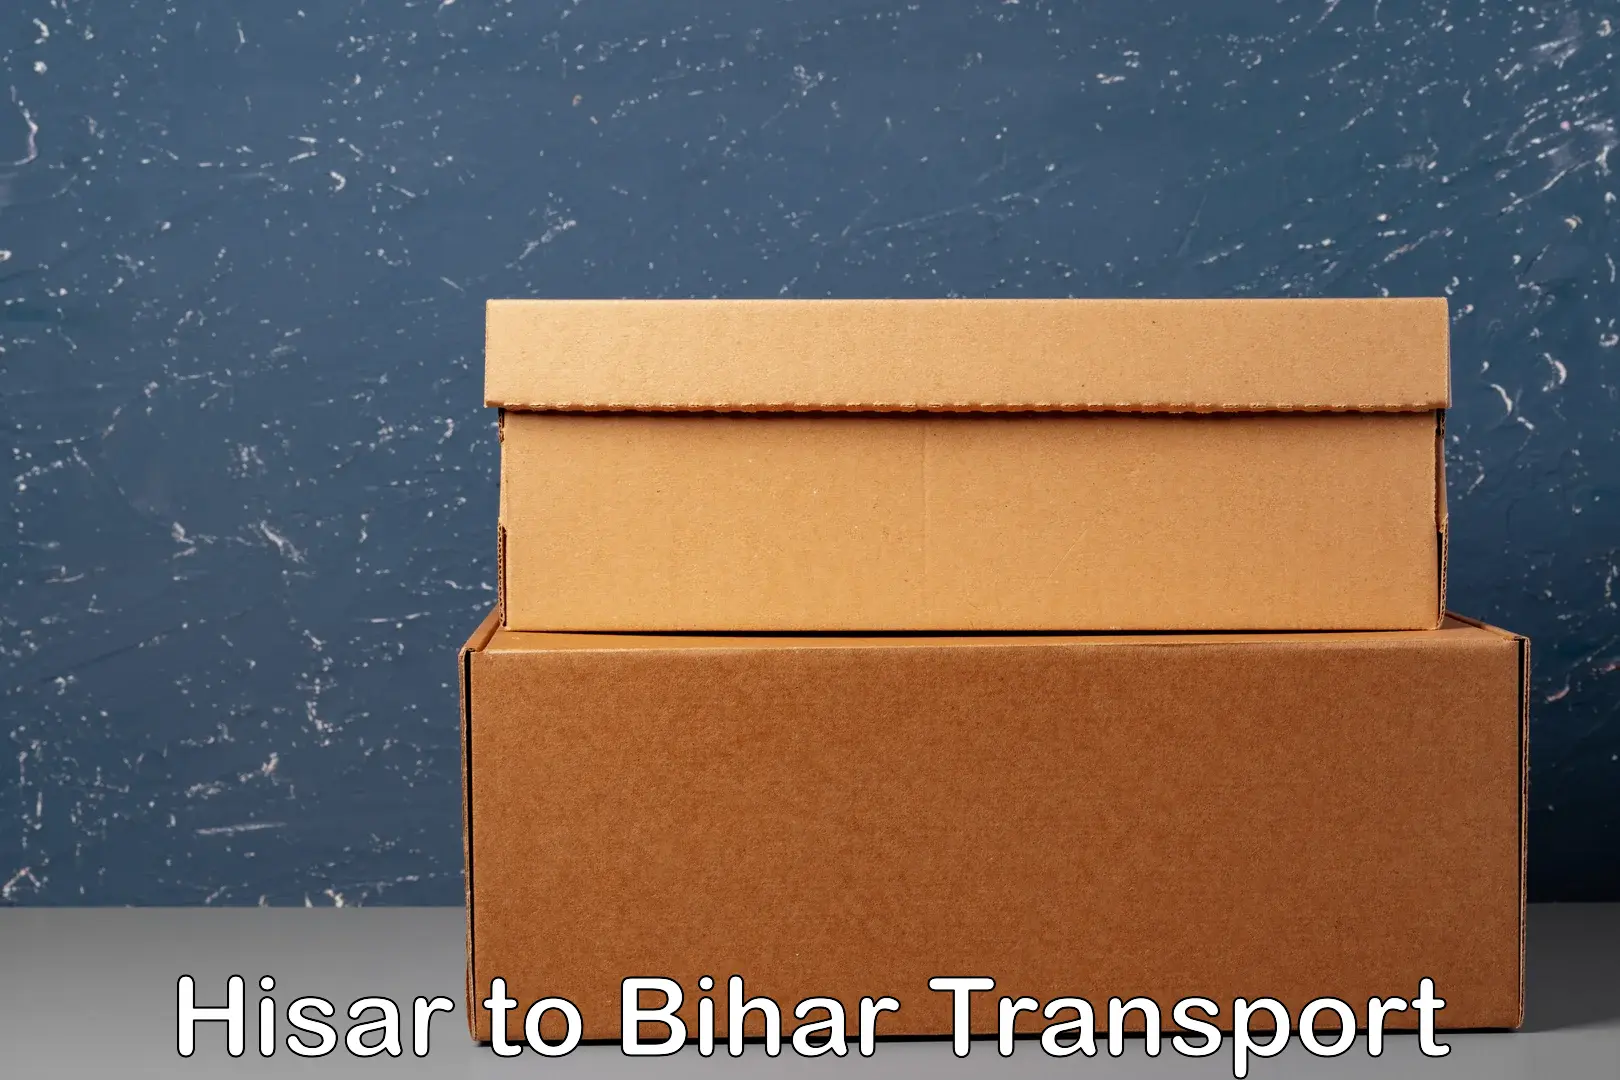 Online transport service Hisar to Jaynagar